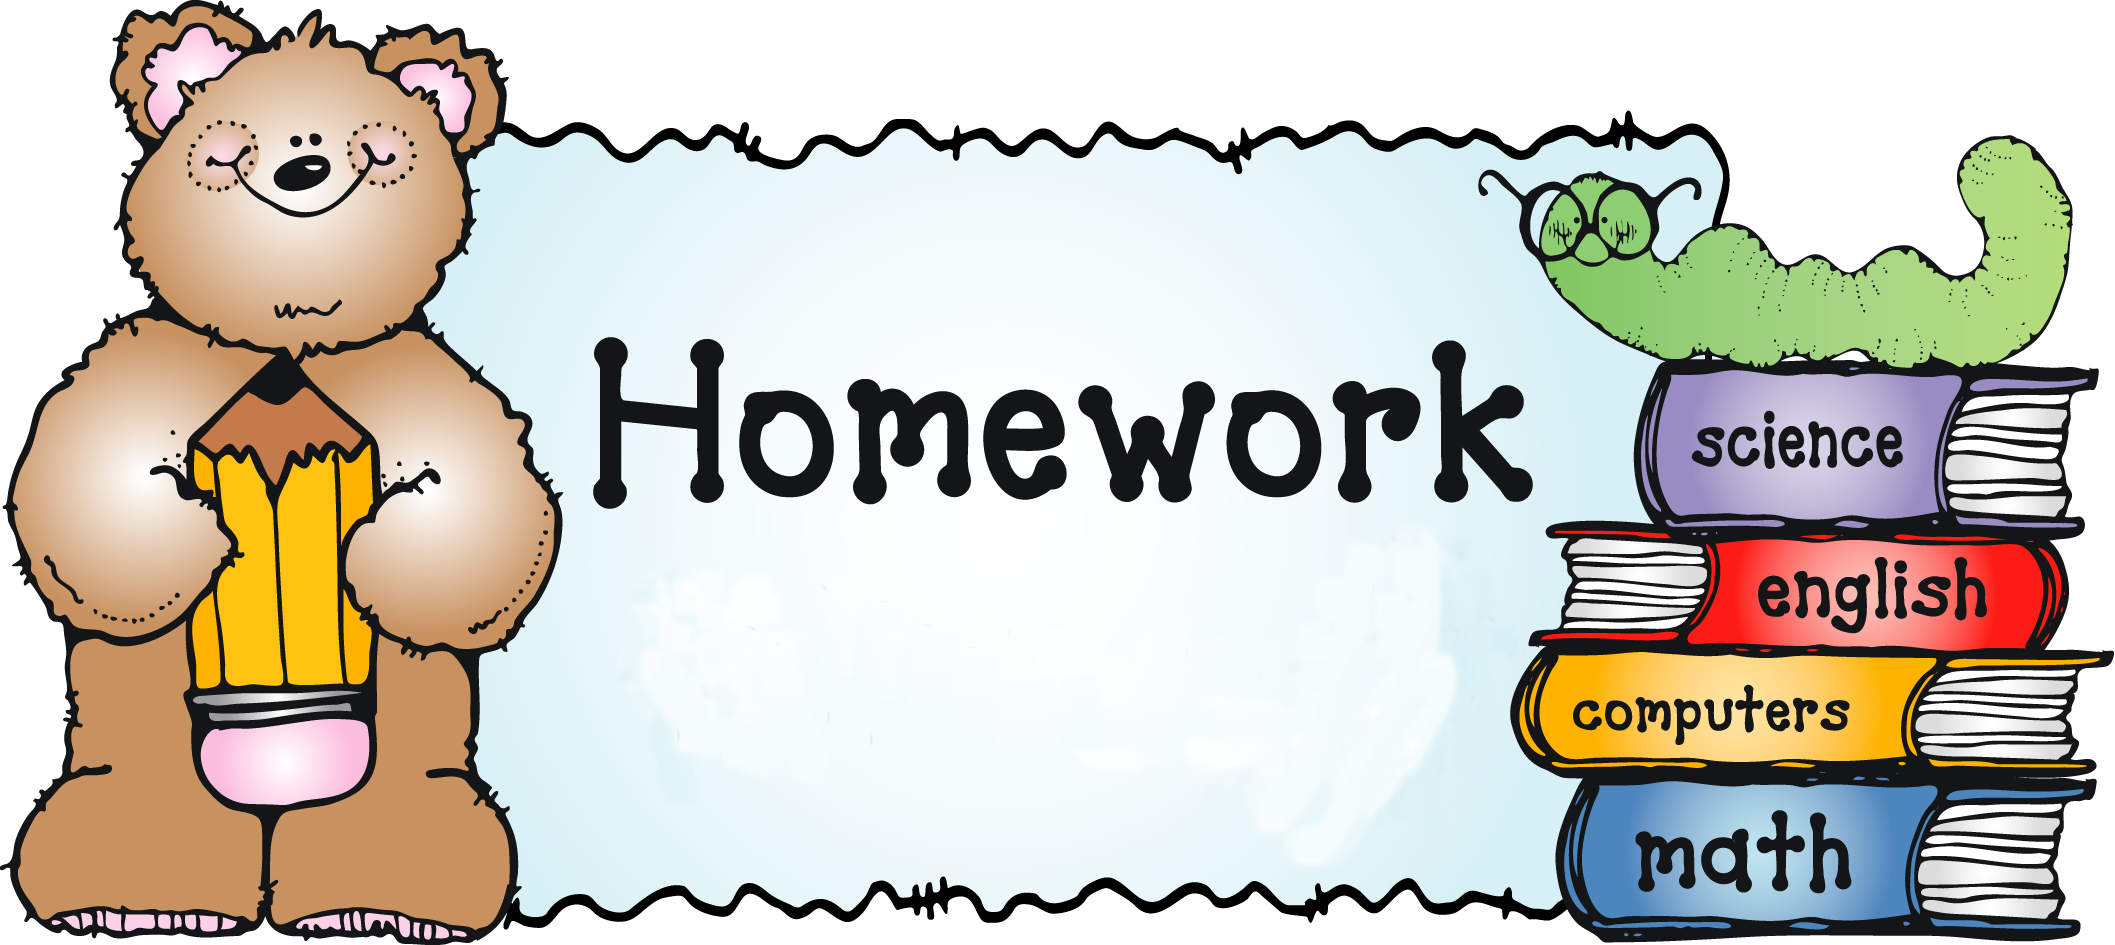 Homework / Homework